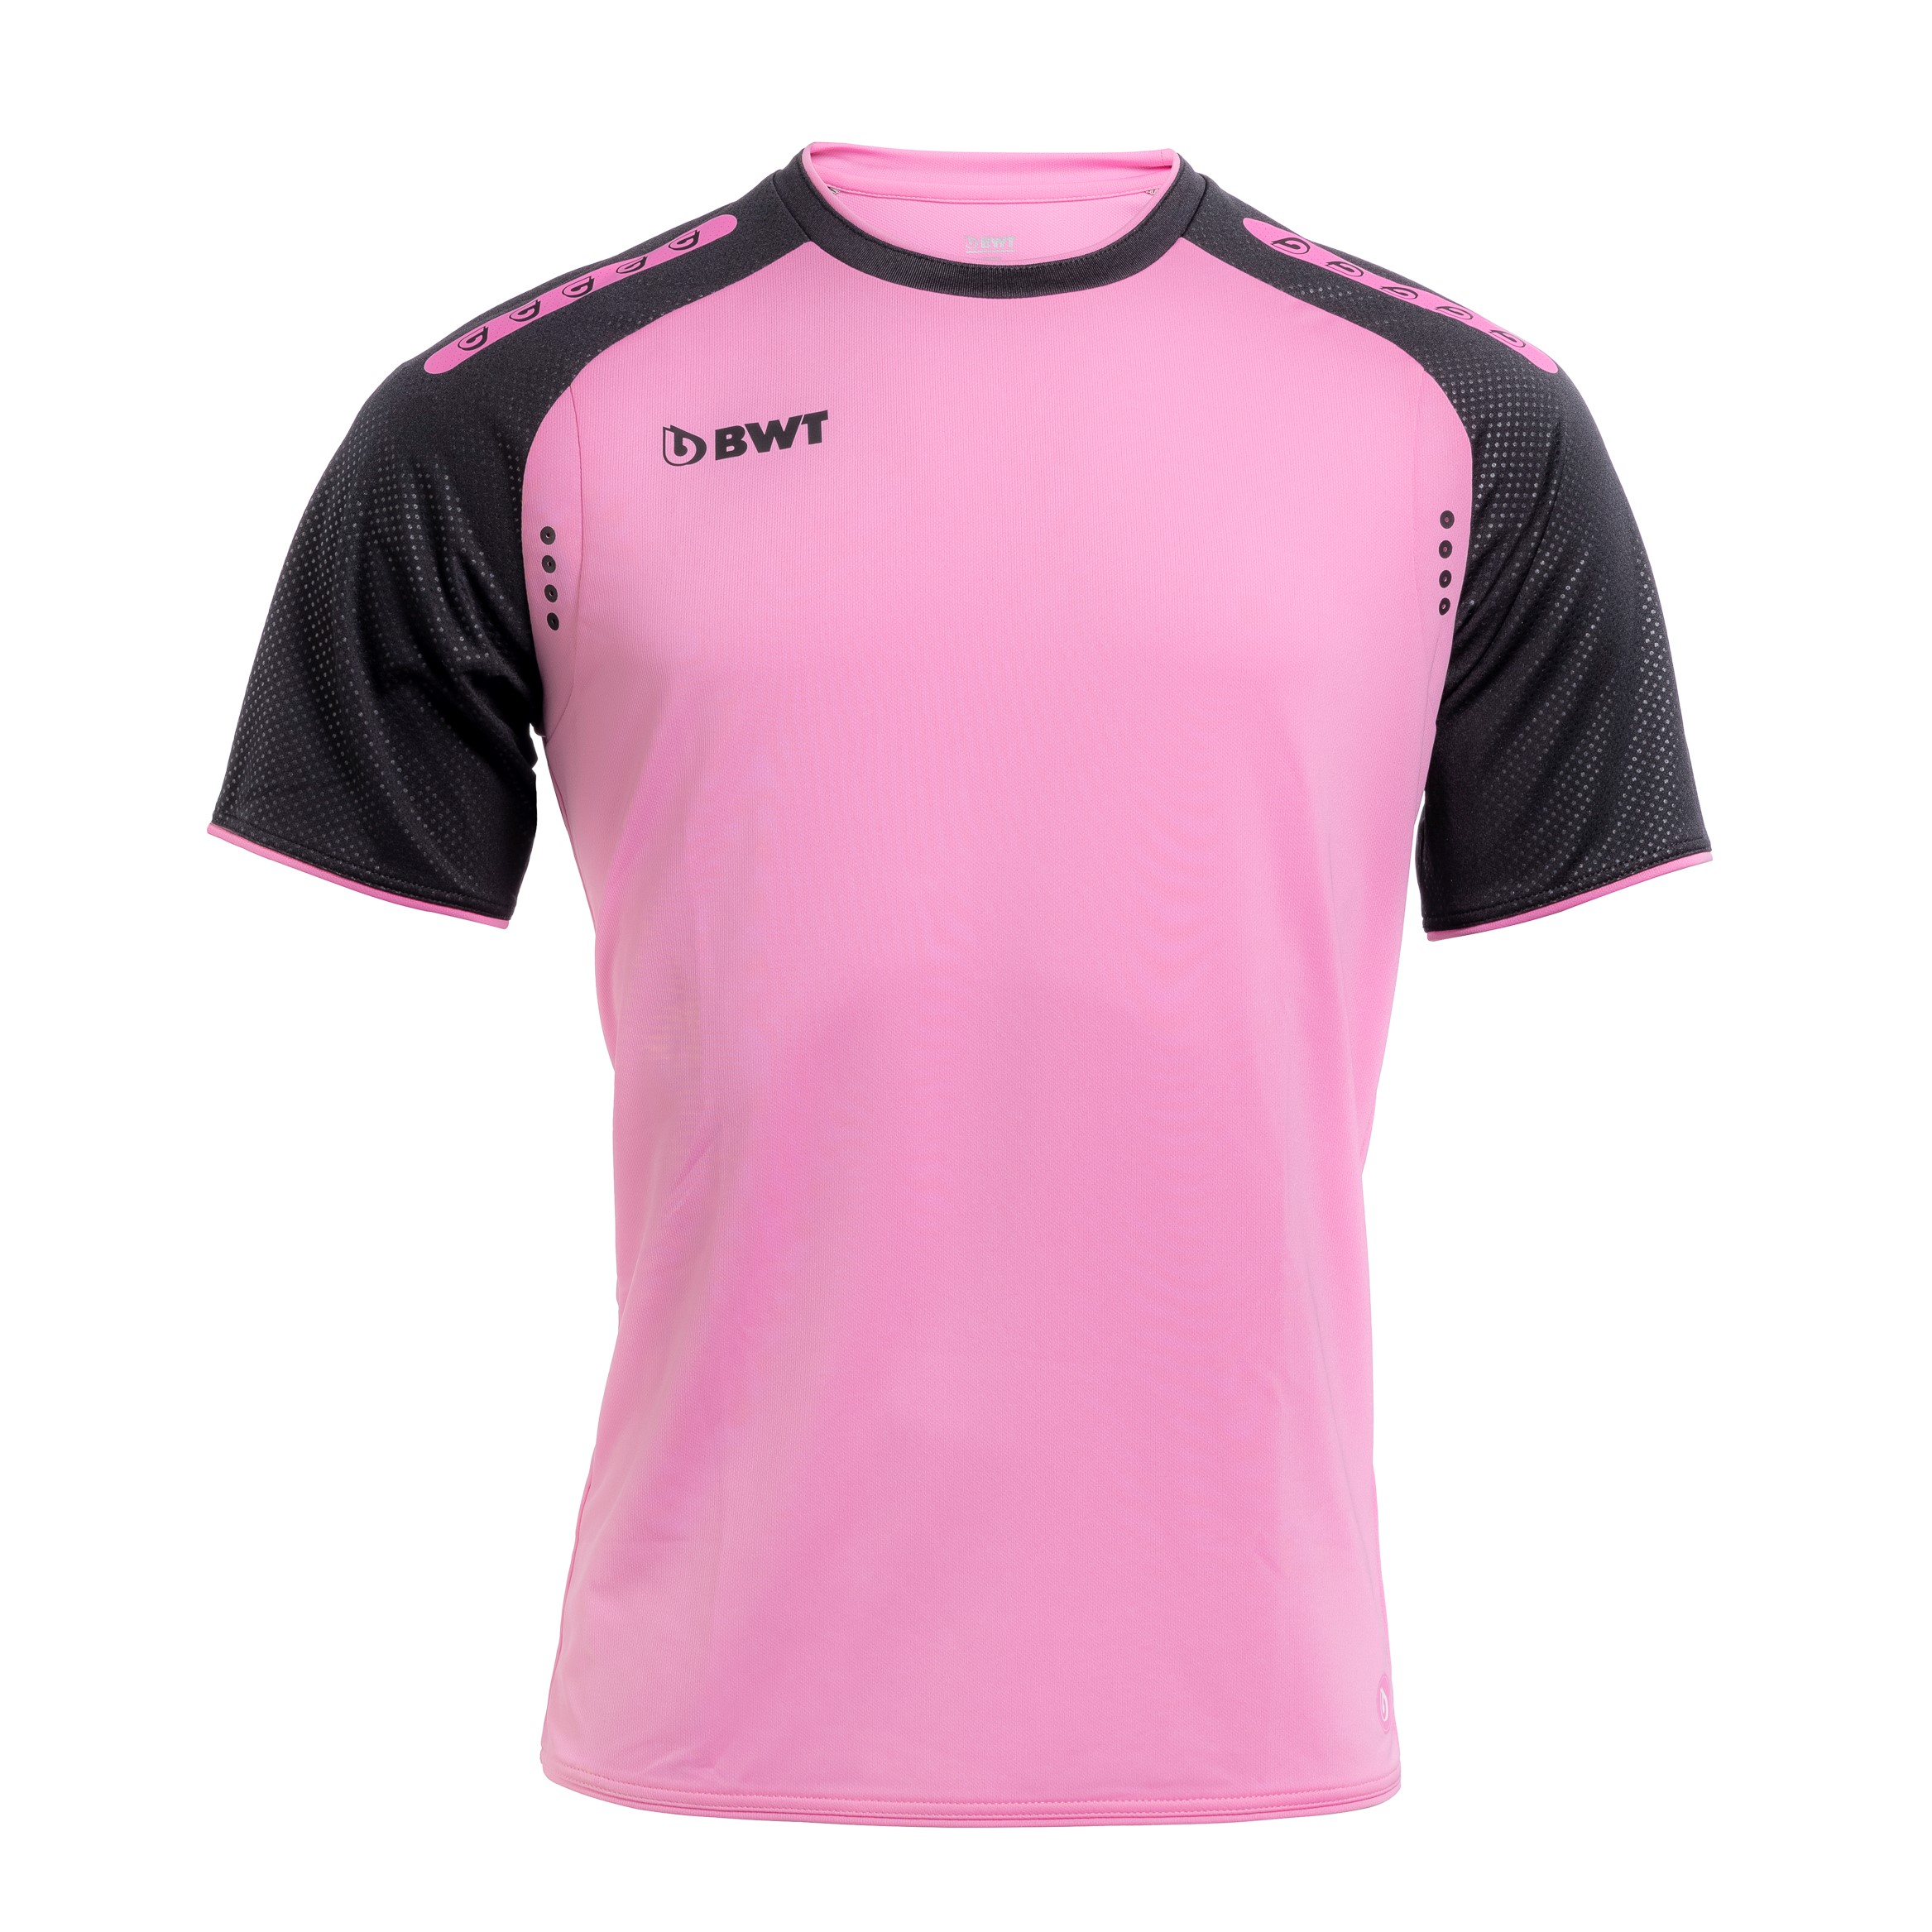 Kurzes Trainingsshirt in rosa von BWT